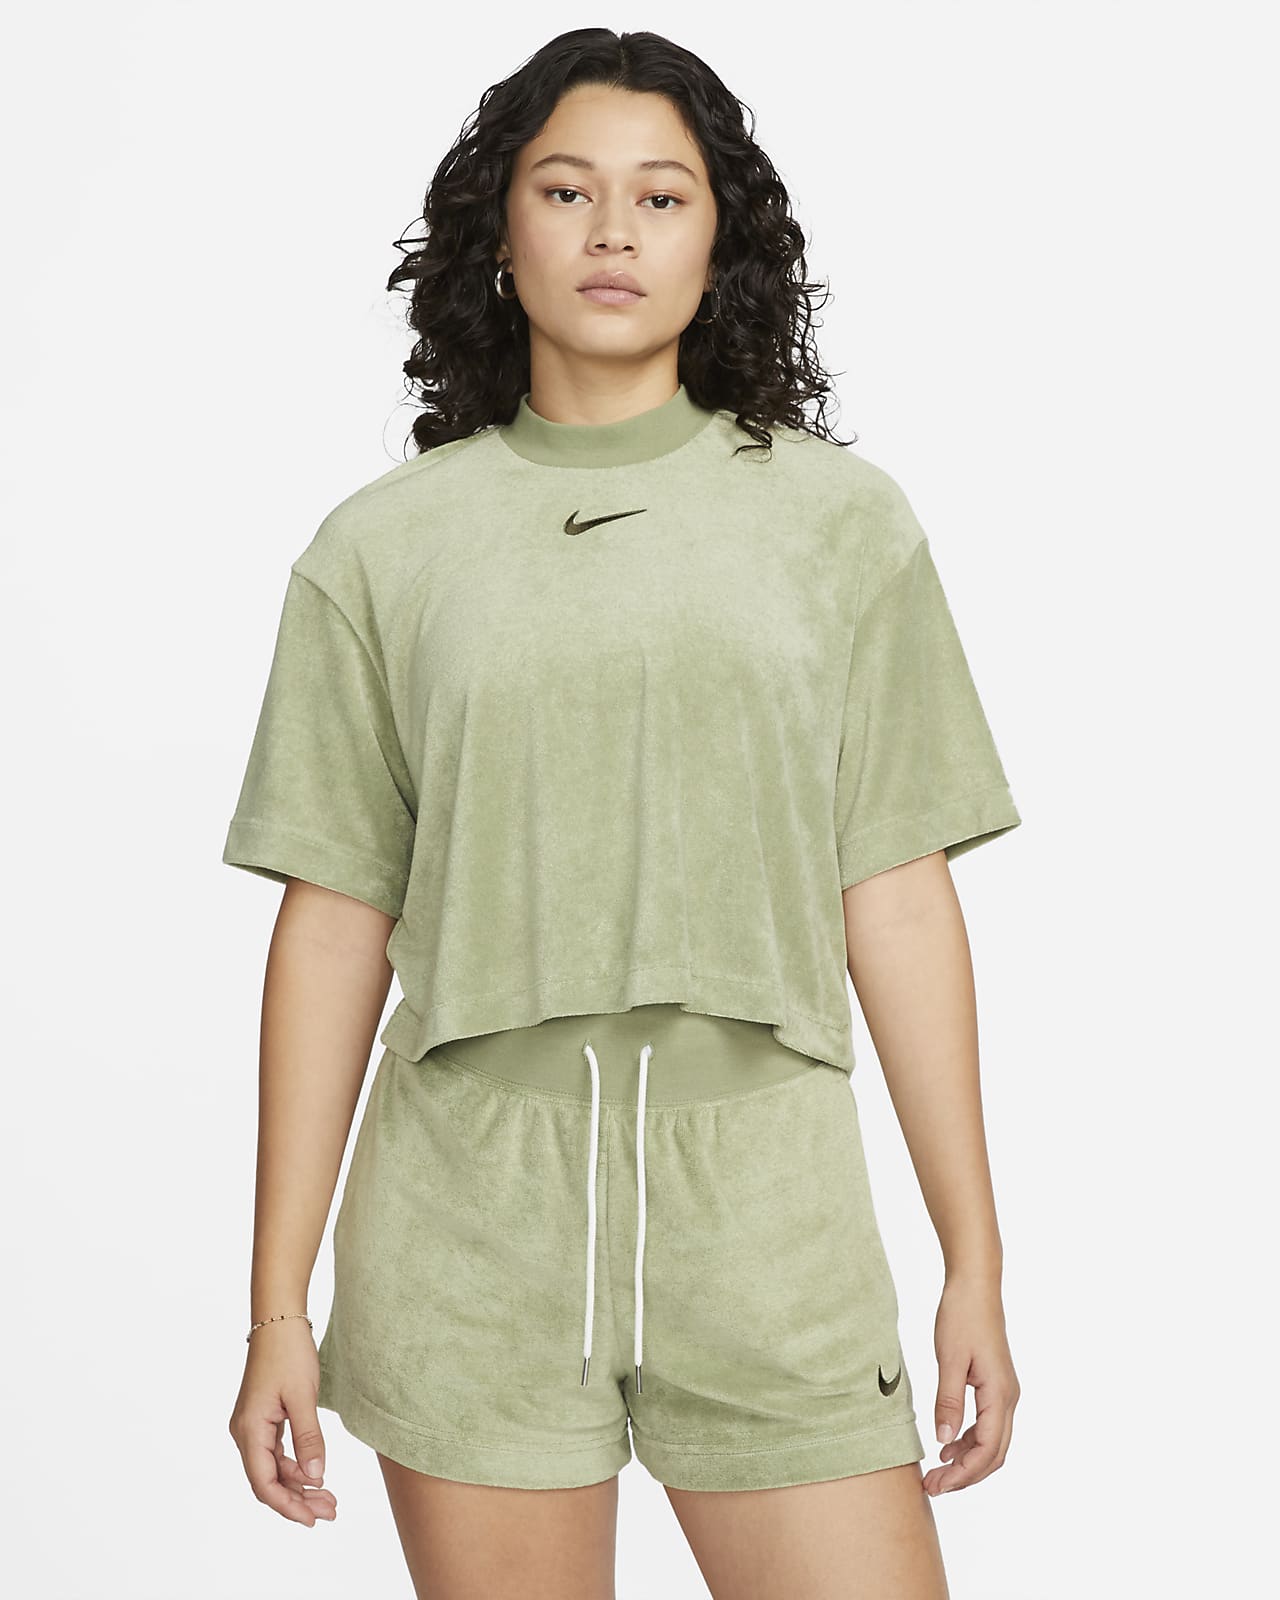 Nike Sportswear Women's Mock-Neck Short-Sleeve Terry Top